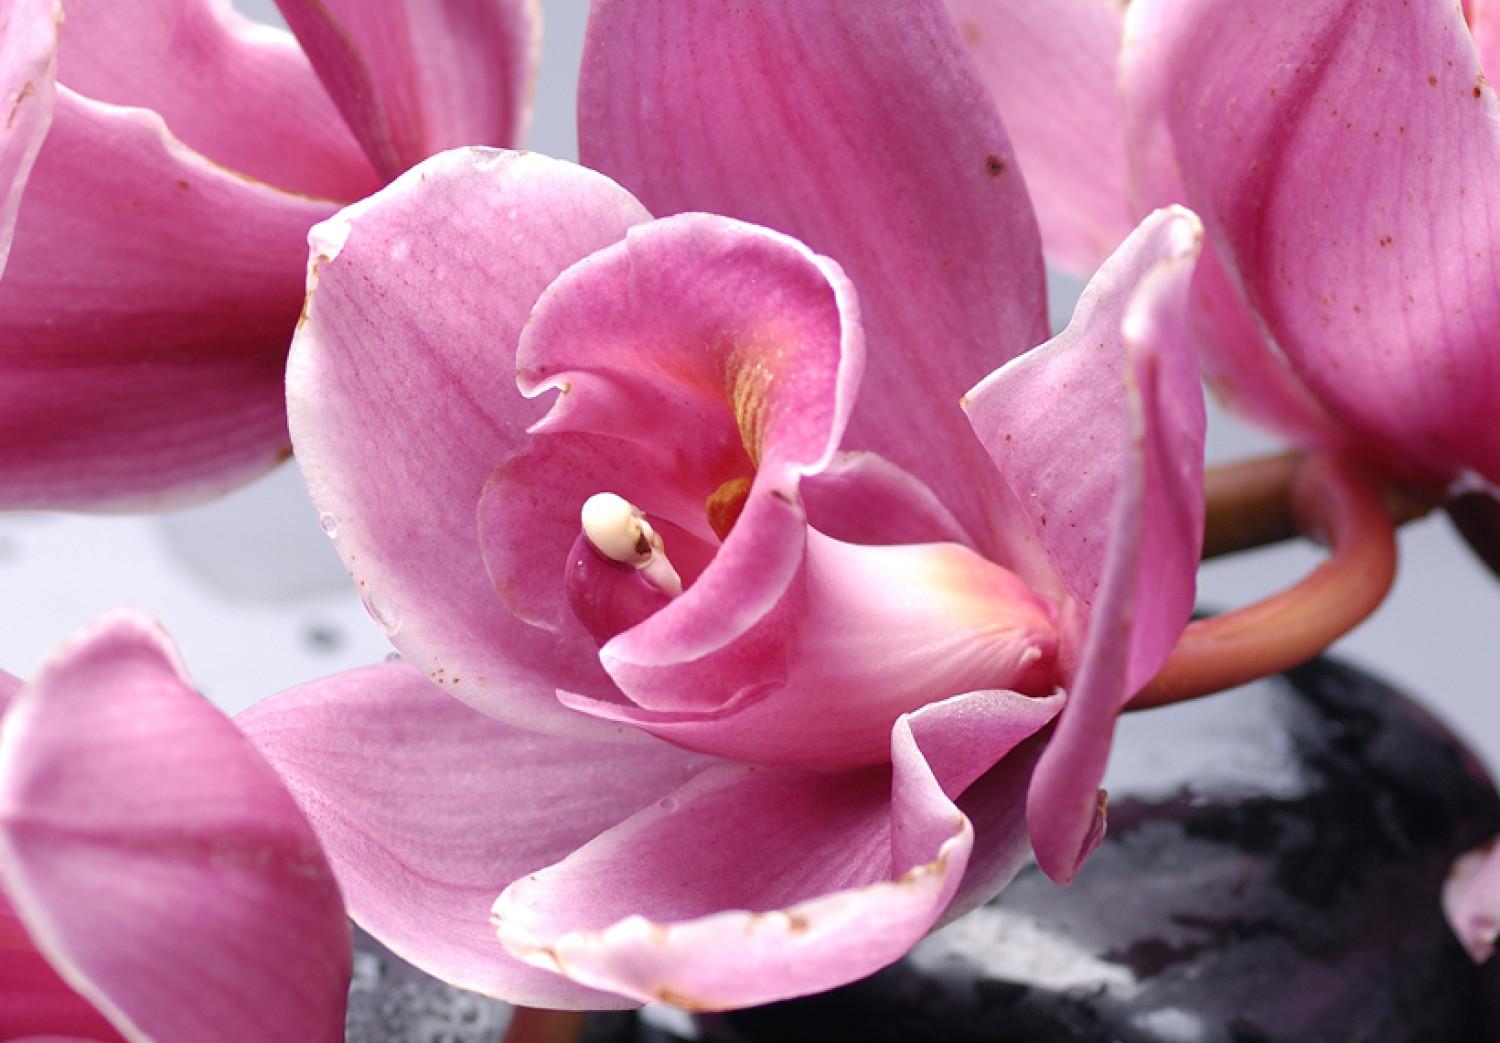 Cuadro moderno Las orquídeas más bellas que nunca